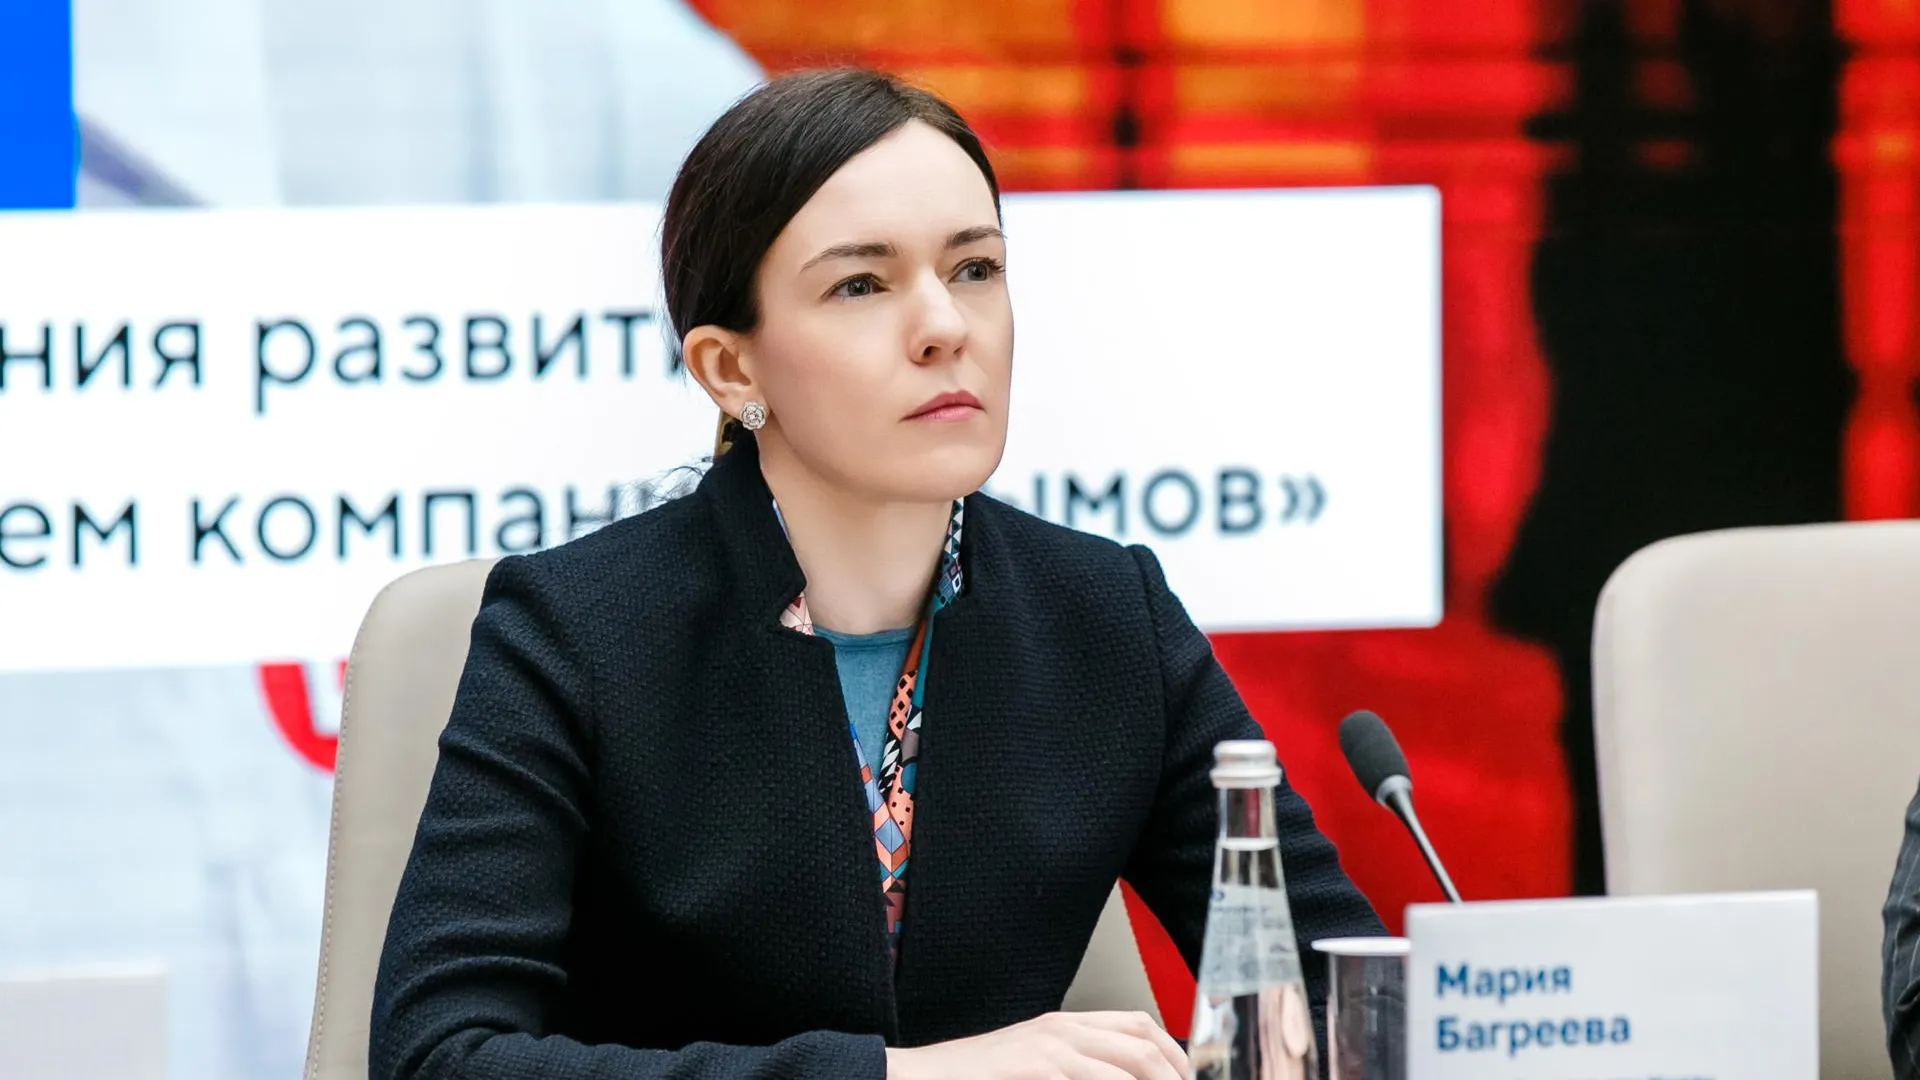 Мария Багреева: в Москве 9 из 10 госзакупок проводят по типовой документации